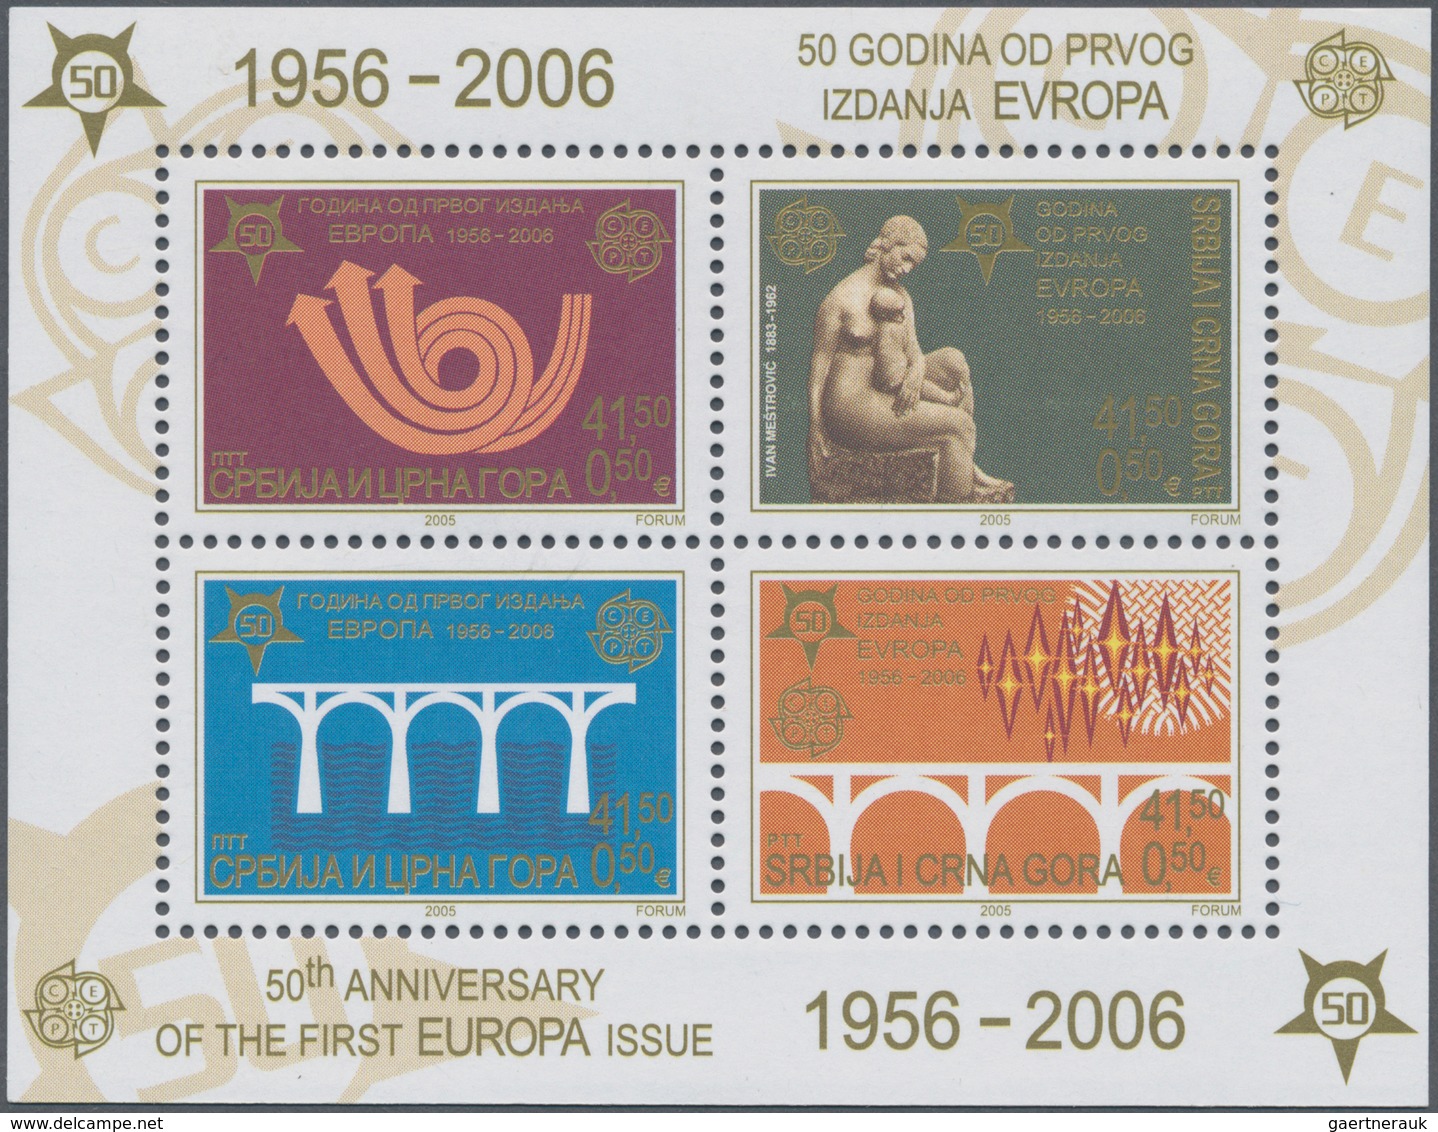 28831 Europa-Union (CEPT): 2006, "50 JAHRE EUROPAMARKEN". Posten mit den Ausgaben von 13 Ländern, postfris